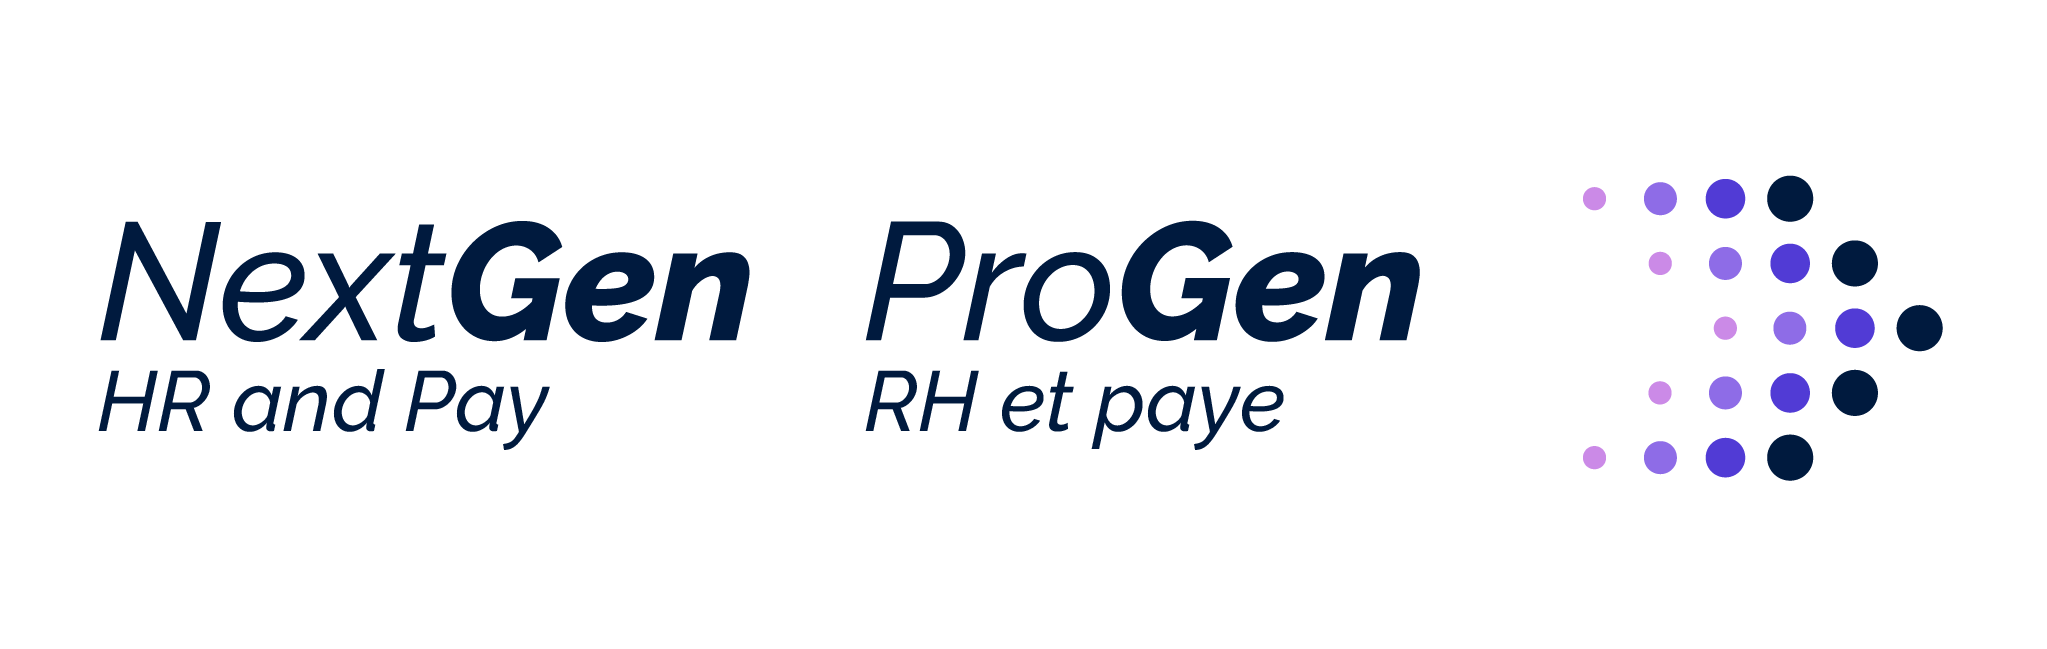 NGRHP-slogan-en-fr.png